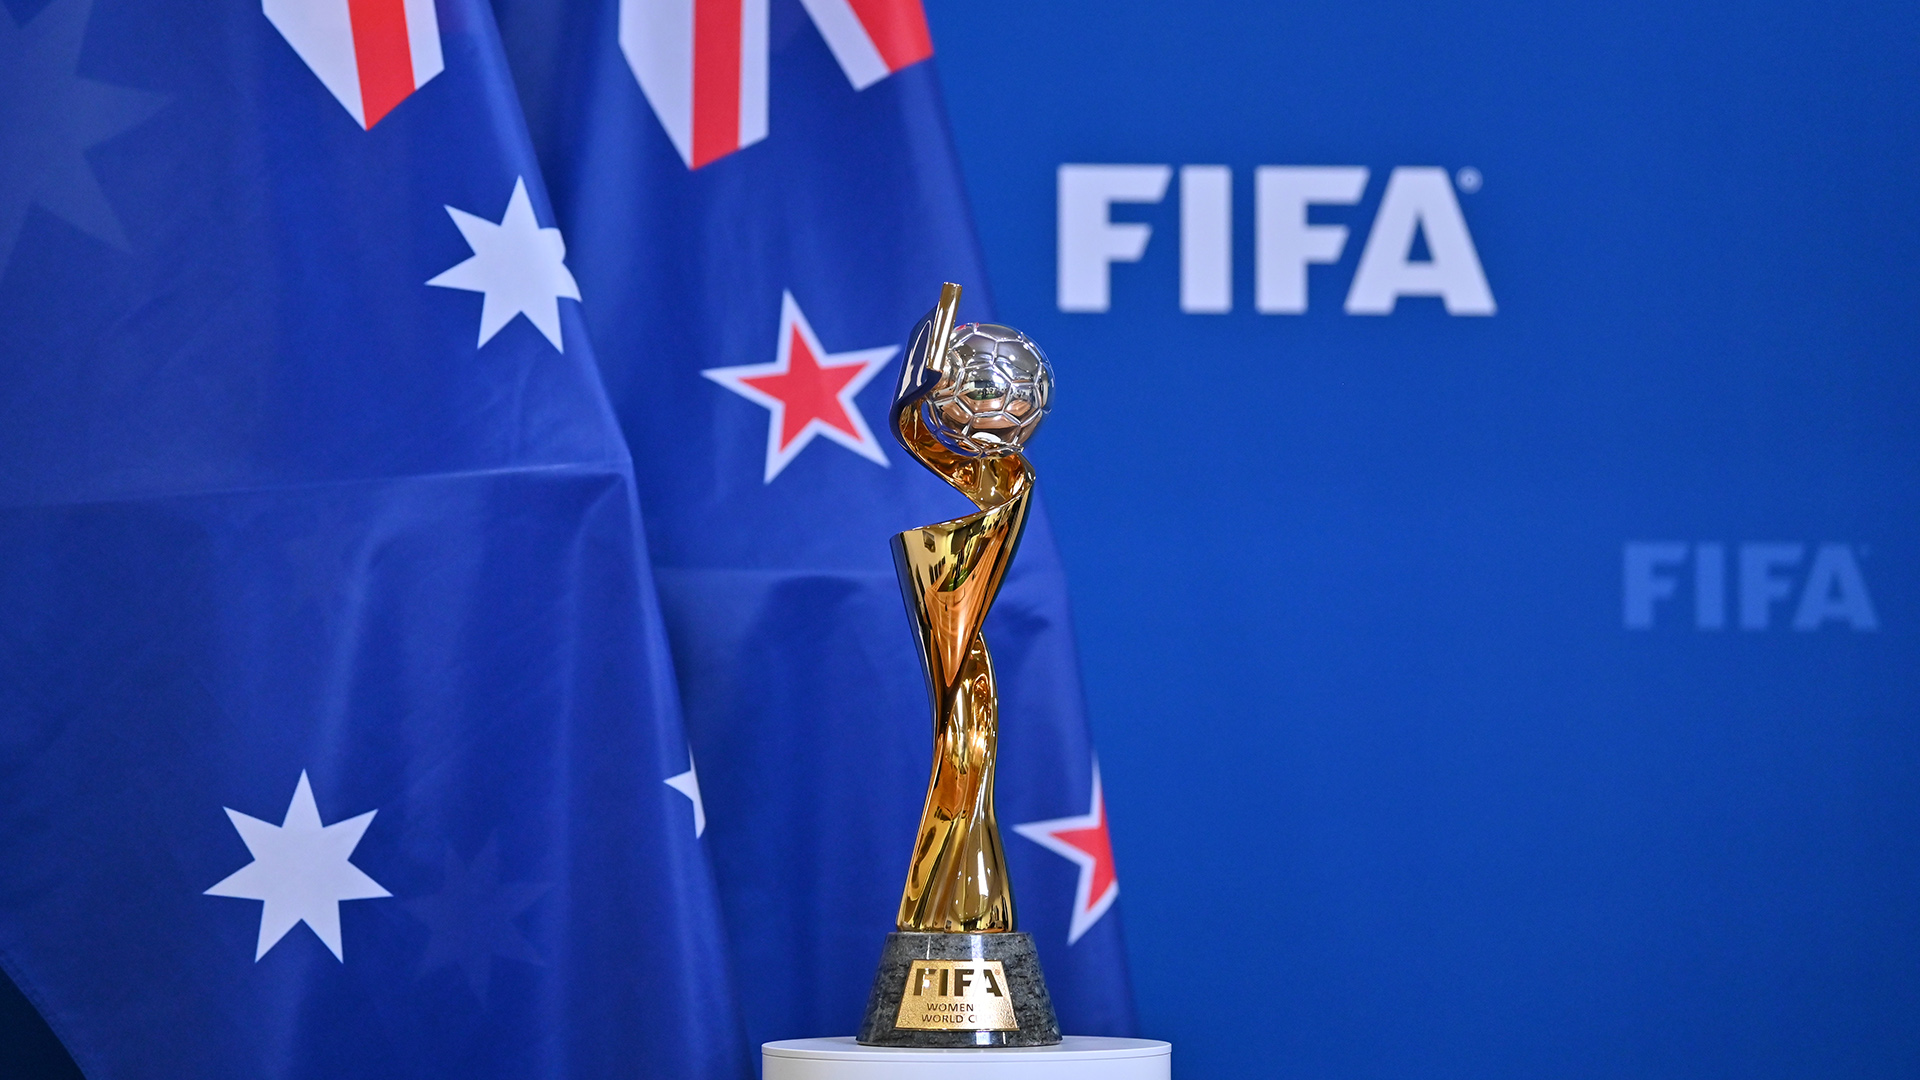 FIFA anuncia premiação para todas as atletas participantes da Copa do Mundo Feminina